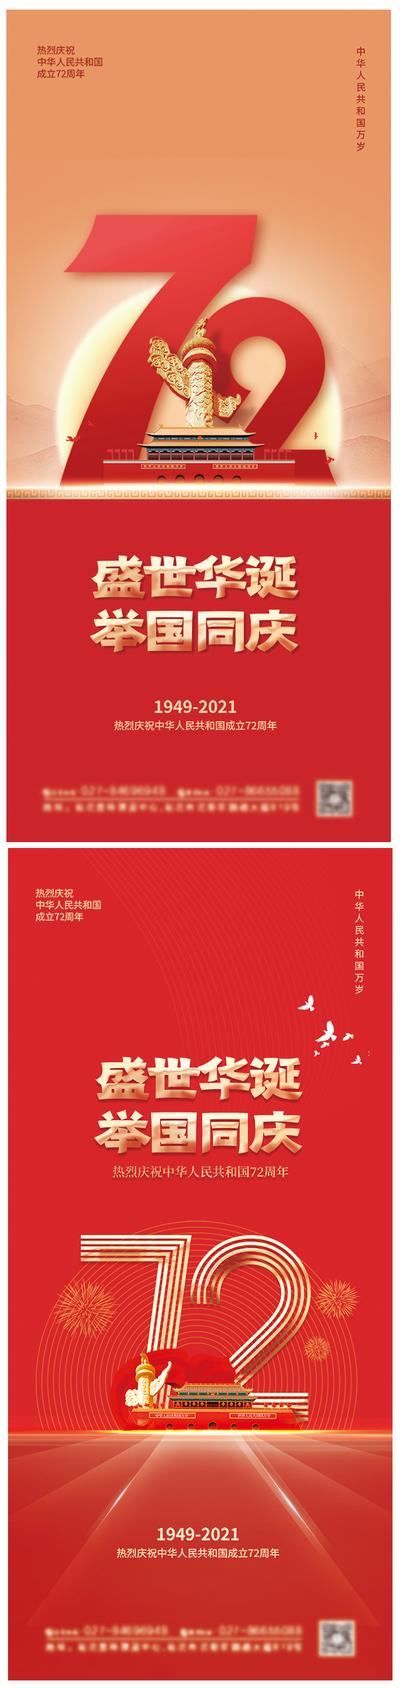 南门网 海报 公历节日 国庆节 红金 数字 系列